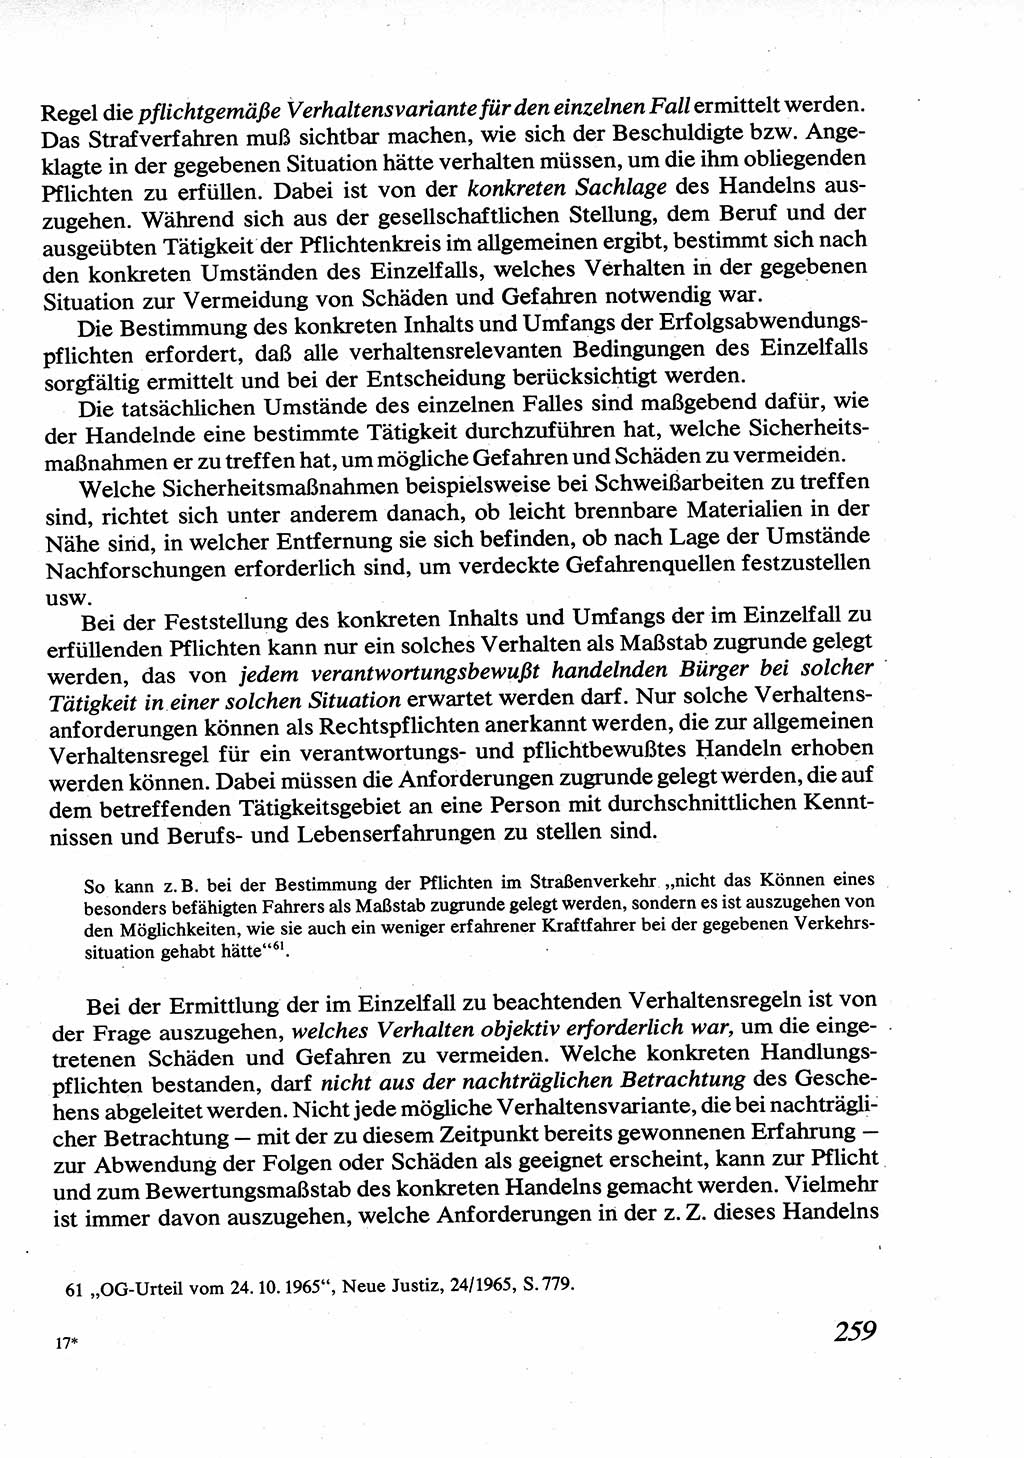 Strafrecht [Deutsche Demokratische Republik (DDR)], Allgemeiner Teil, Lehrbuch 1976, Seite 259 (Strafr. DDR AT Lb. 1976, S. 259)